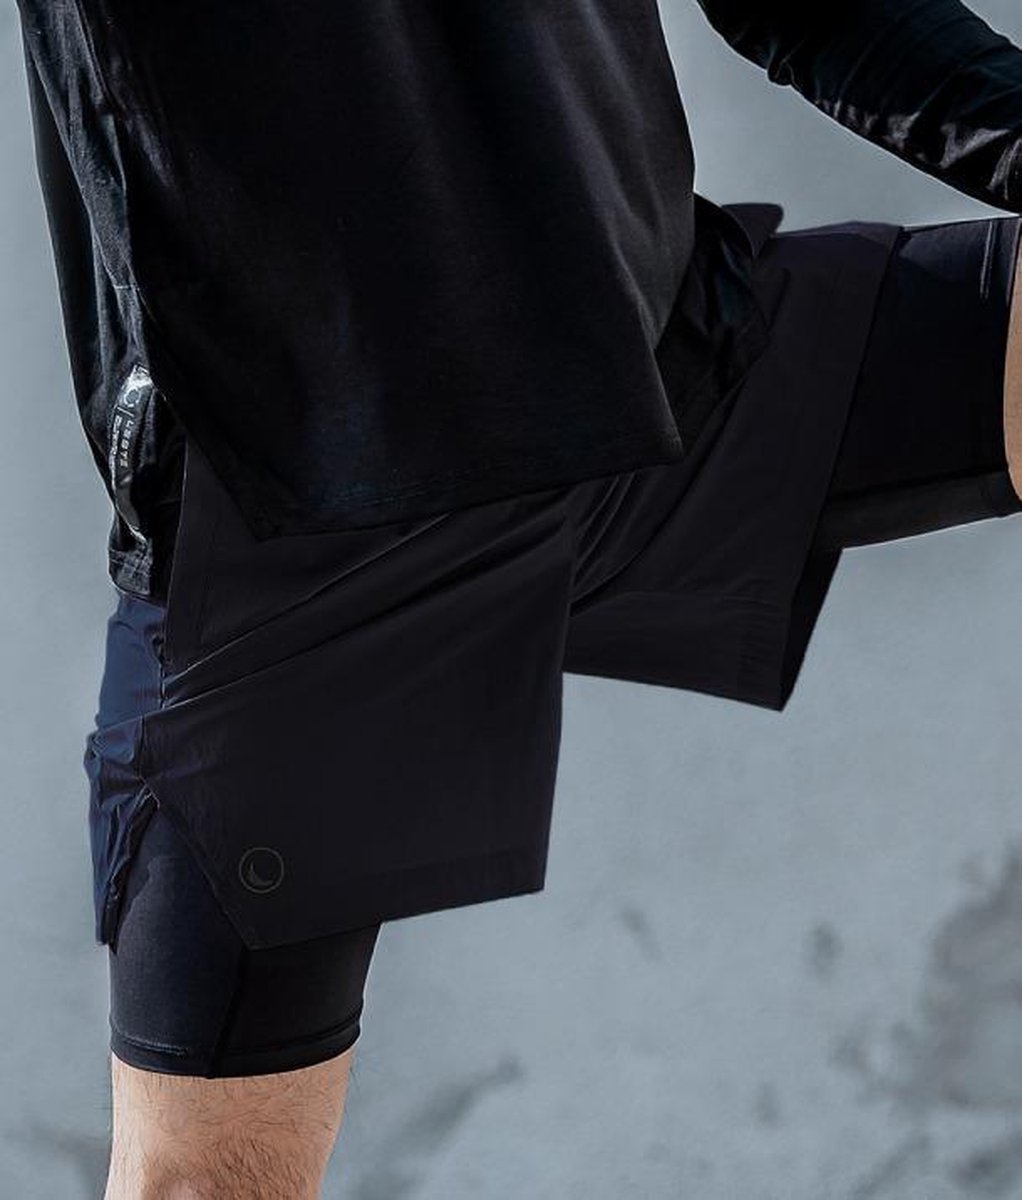 LESTE FERRY Shorts Zwart XL [Korean Products]